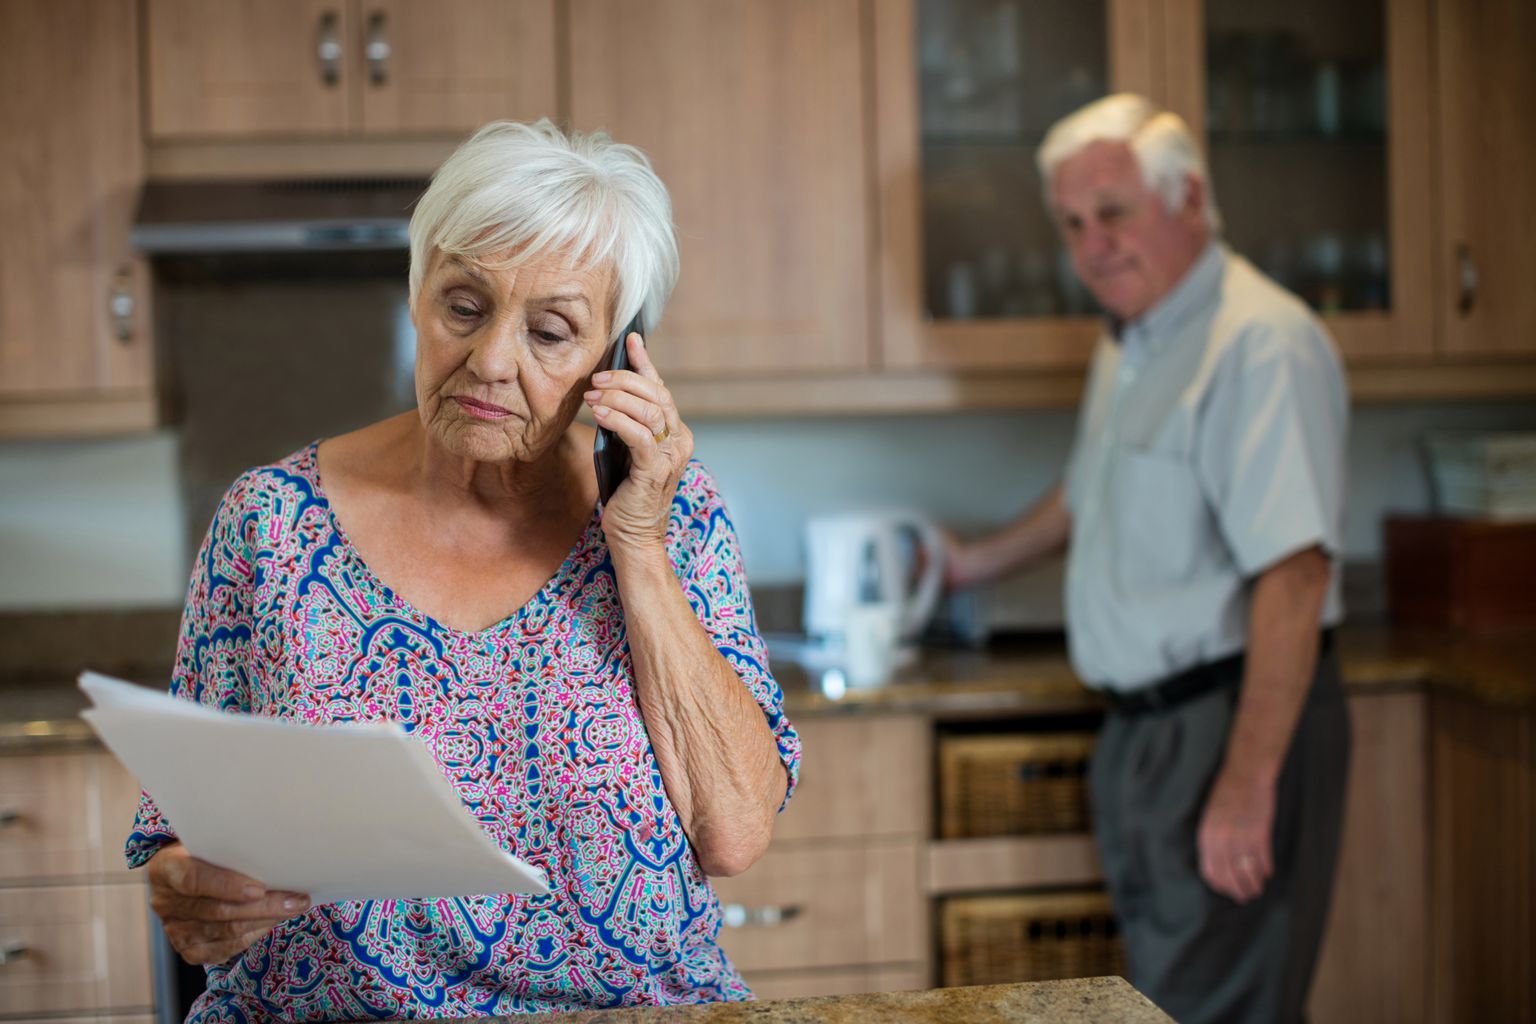 Oudere vrouw aan de telefoon met een briefje in haar hand, oudere man op de achtergrond